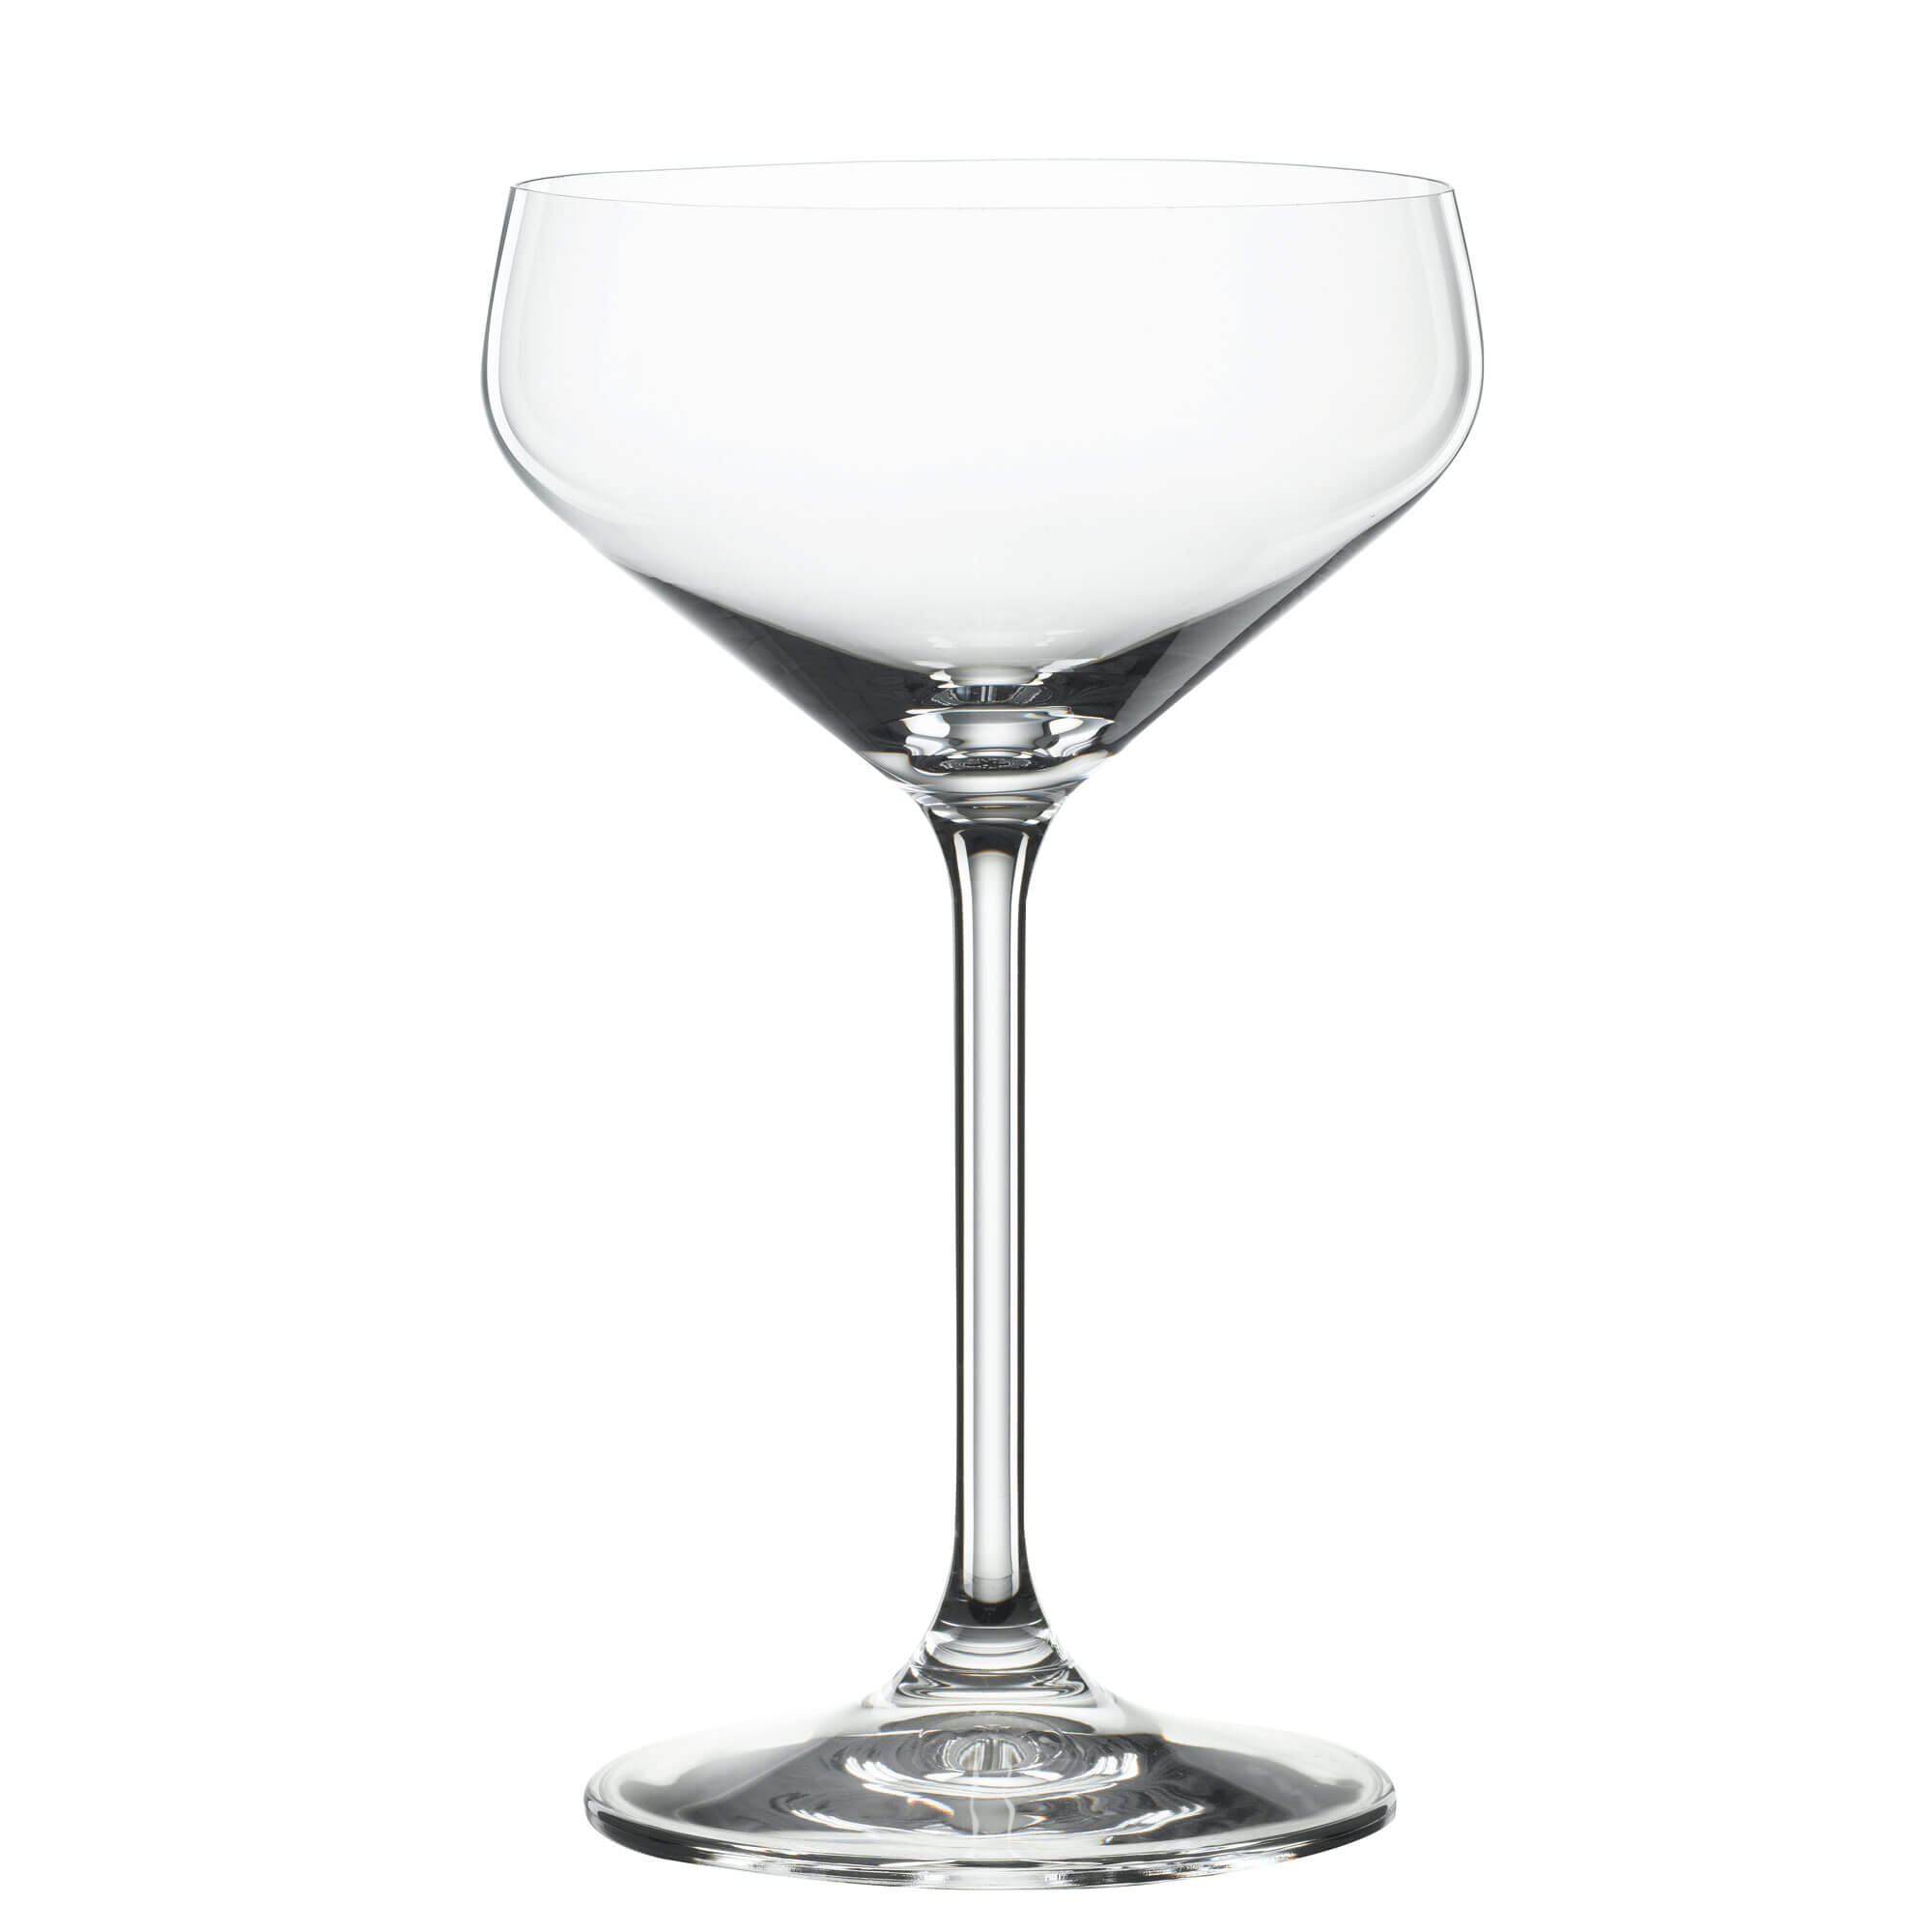 Coupette glass Style, Spiegelau - 290ml (1 pc.)